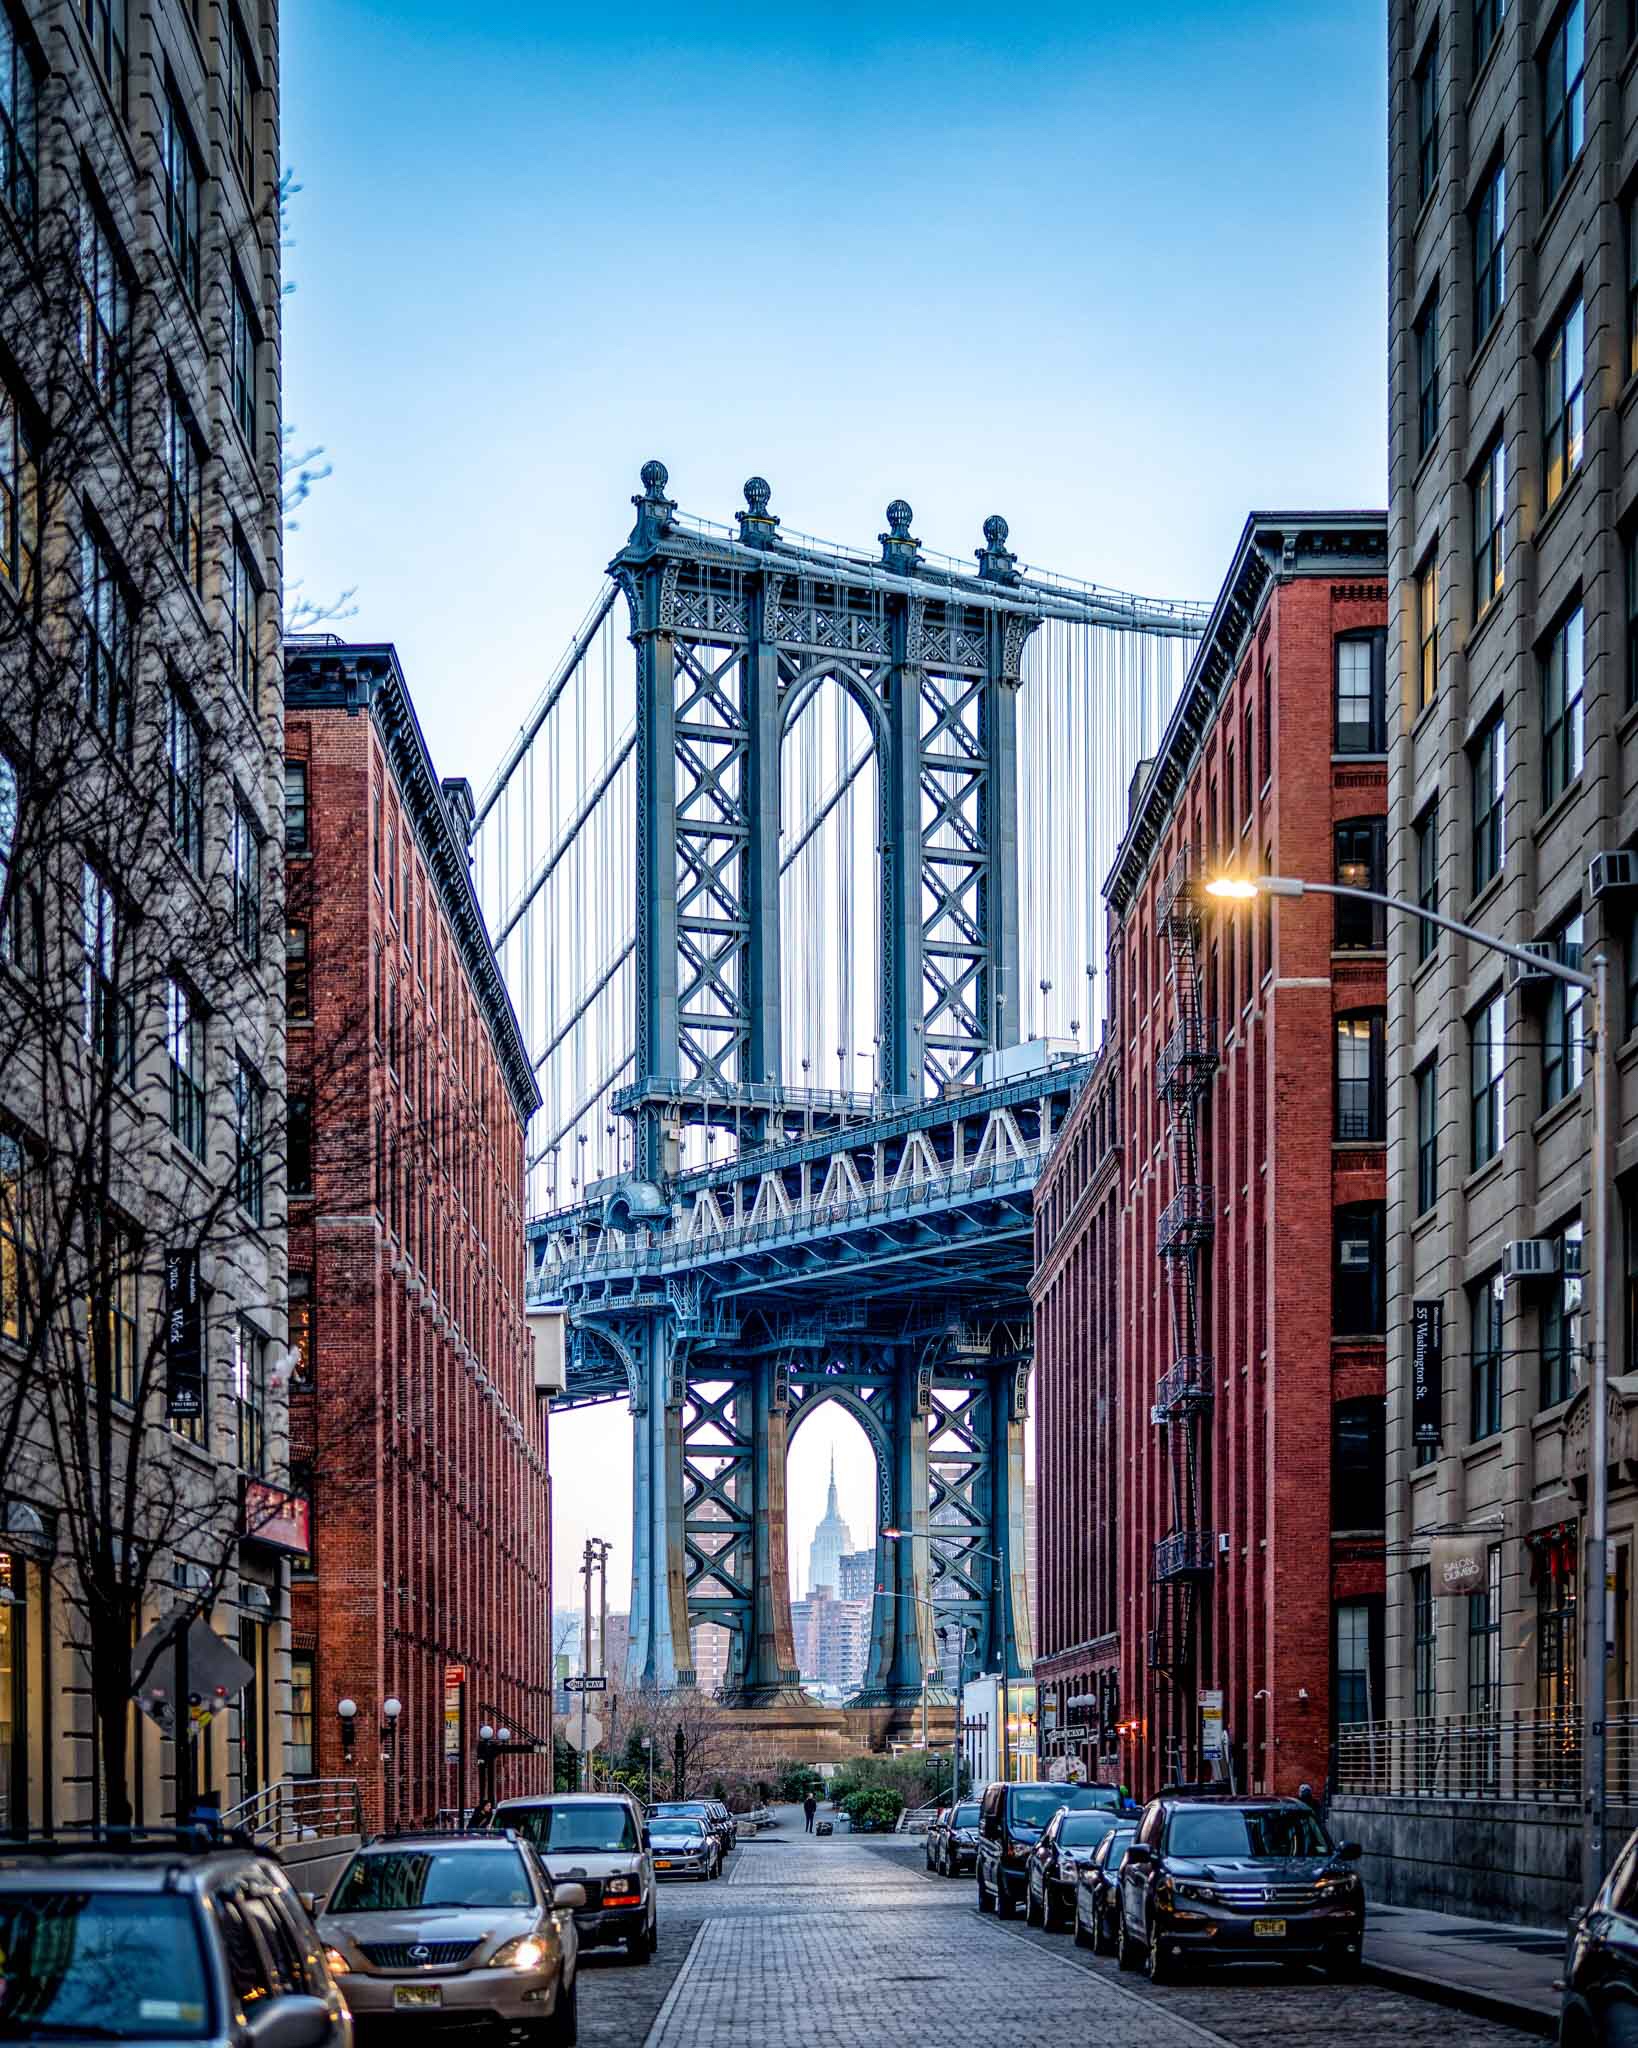 Manhattan Bridge over a street